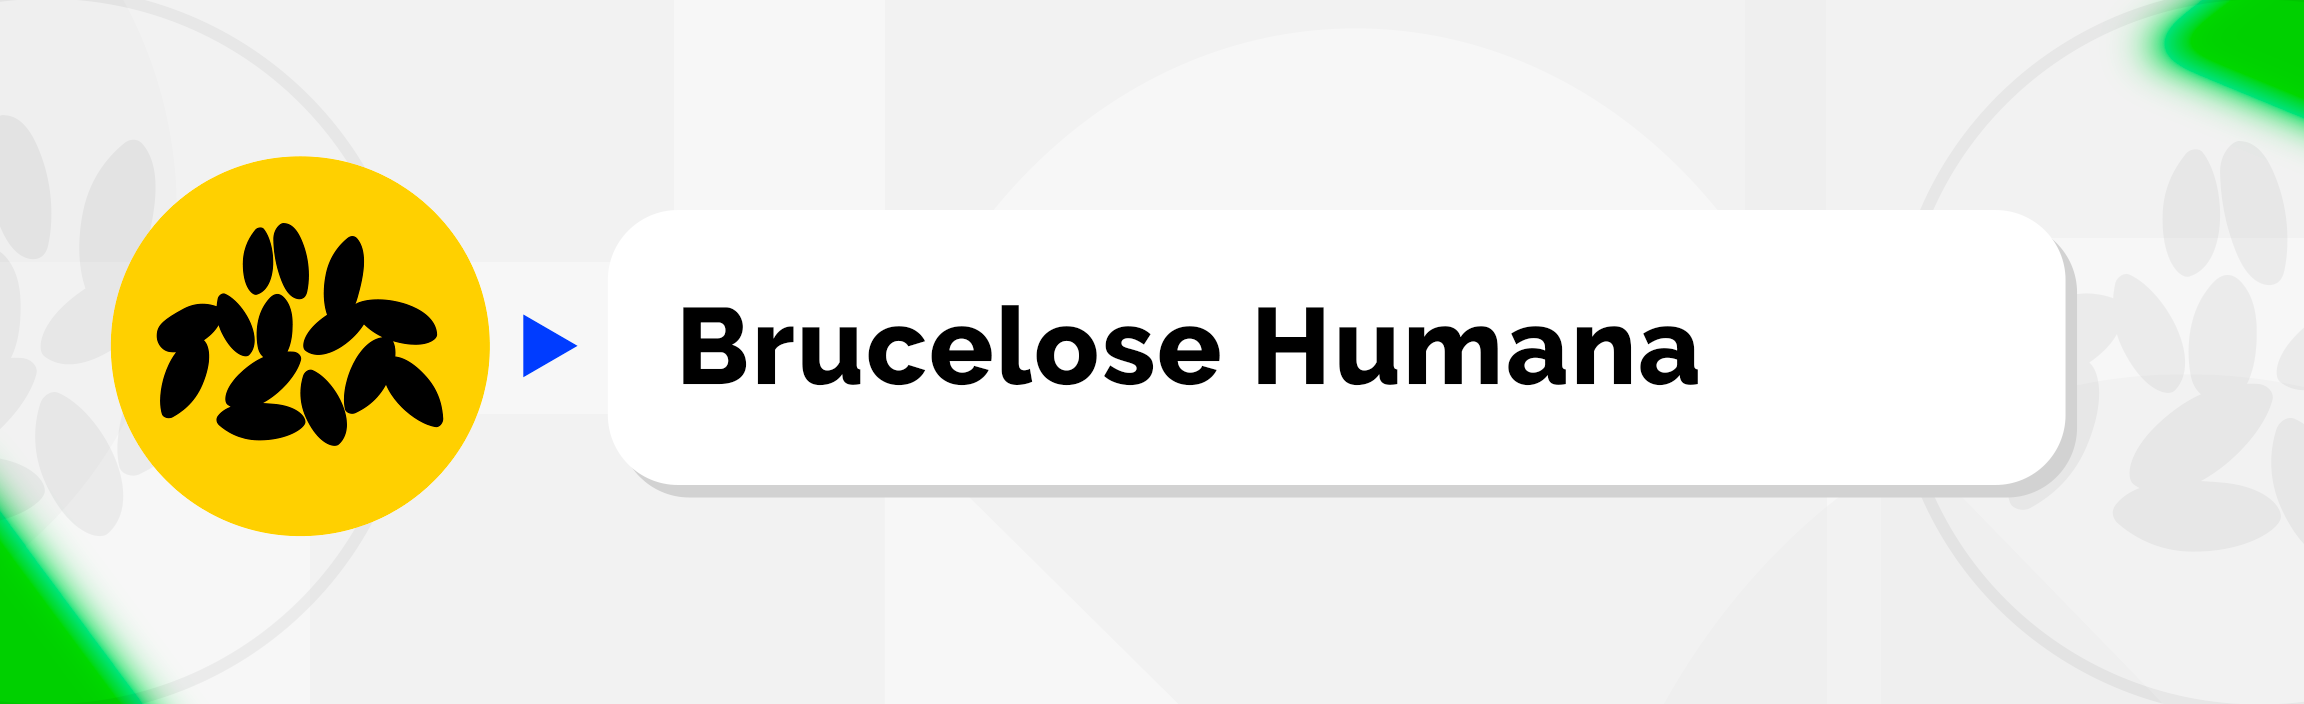 Brucelose Humana